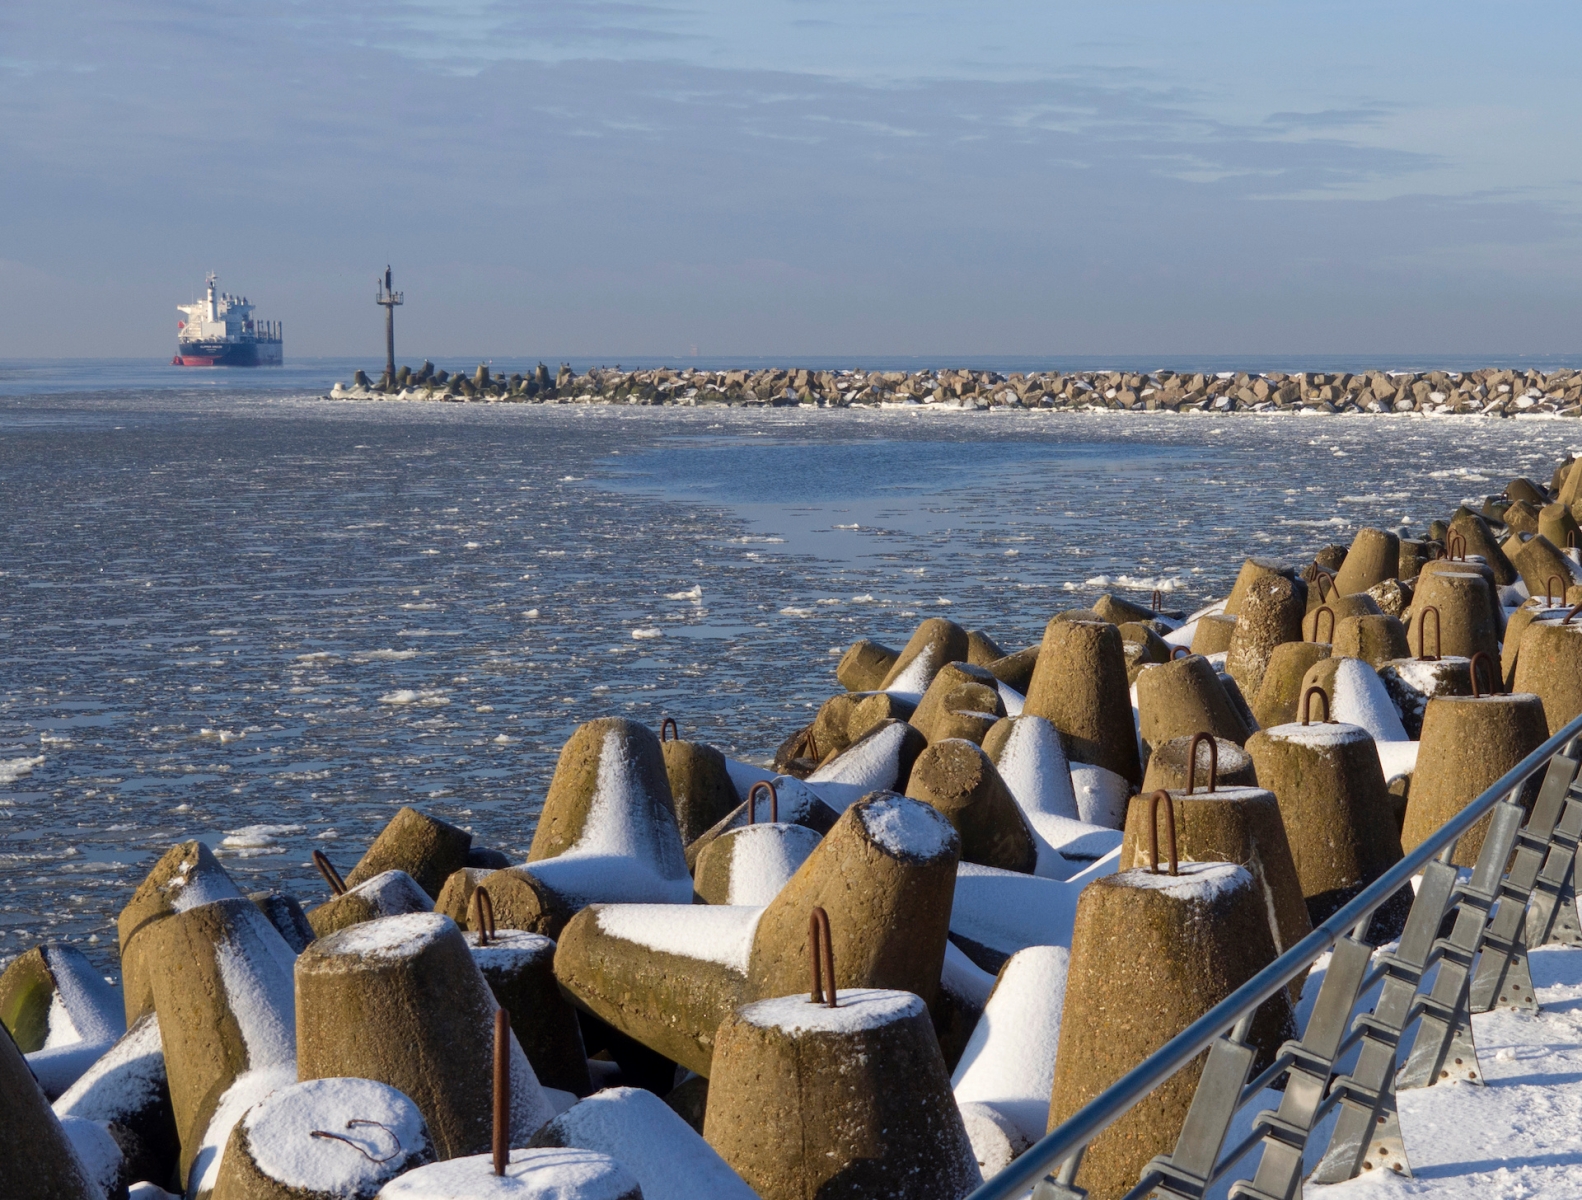 L'argine lungo il Mar Baltico della città di Klaipeda in Lituania in una soleggiata giornata invernale